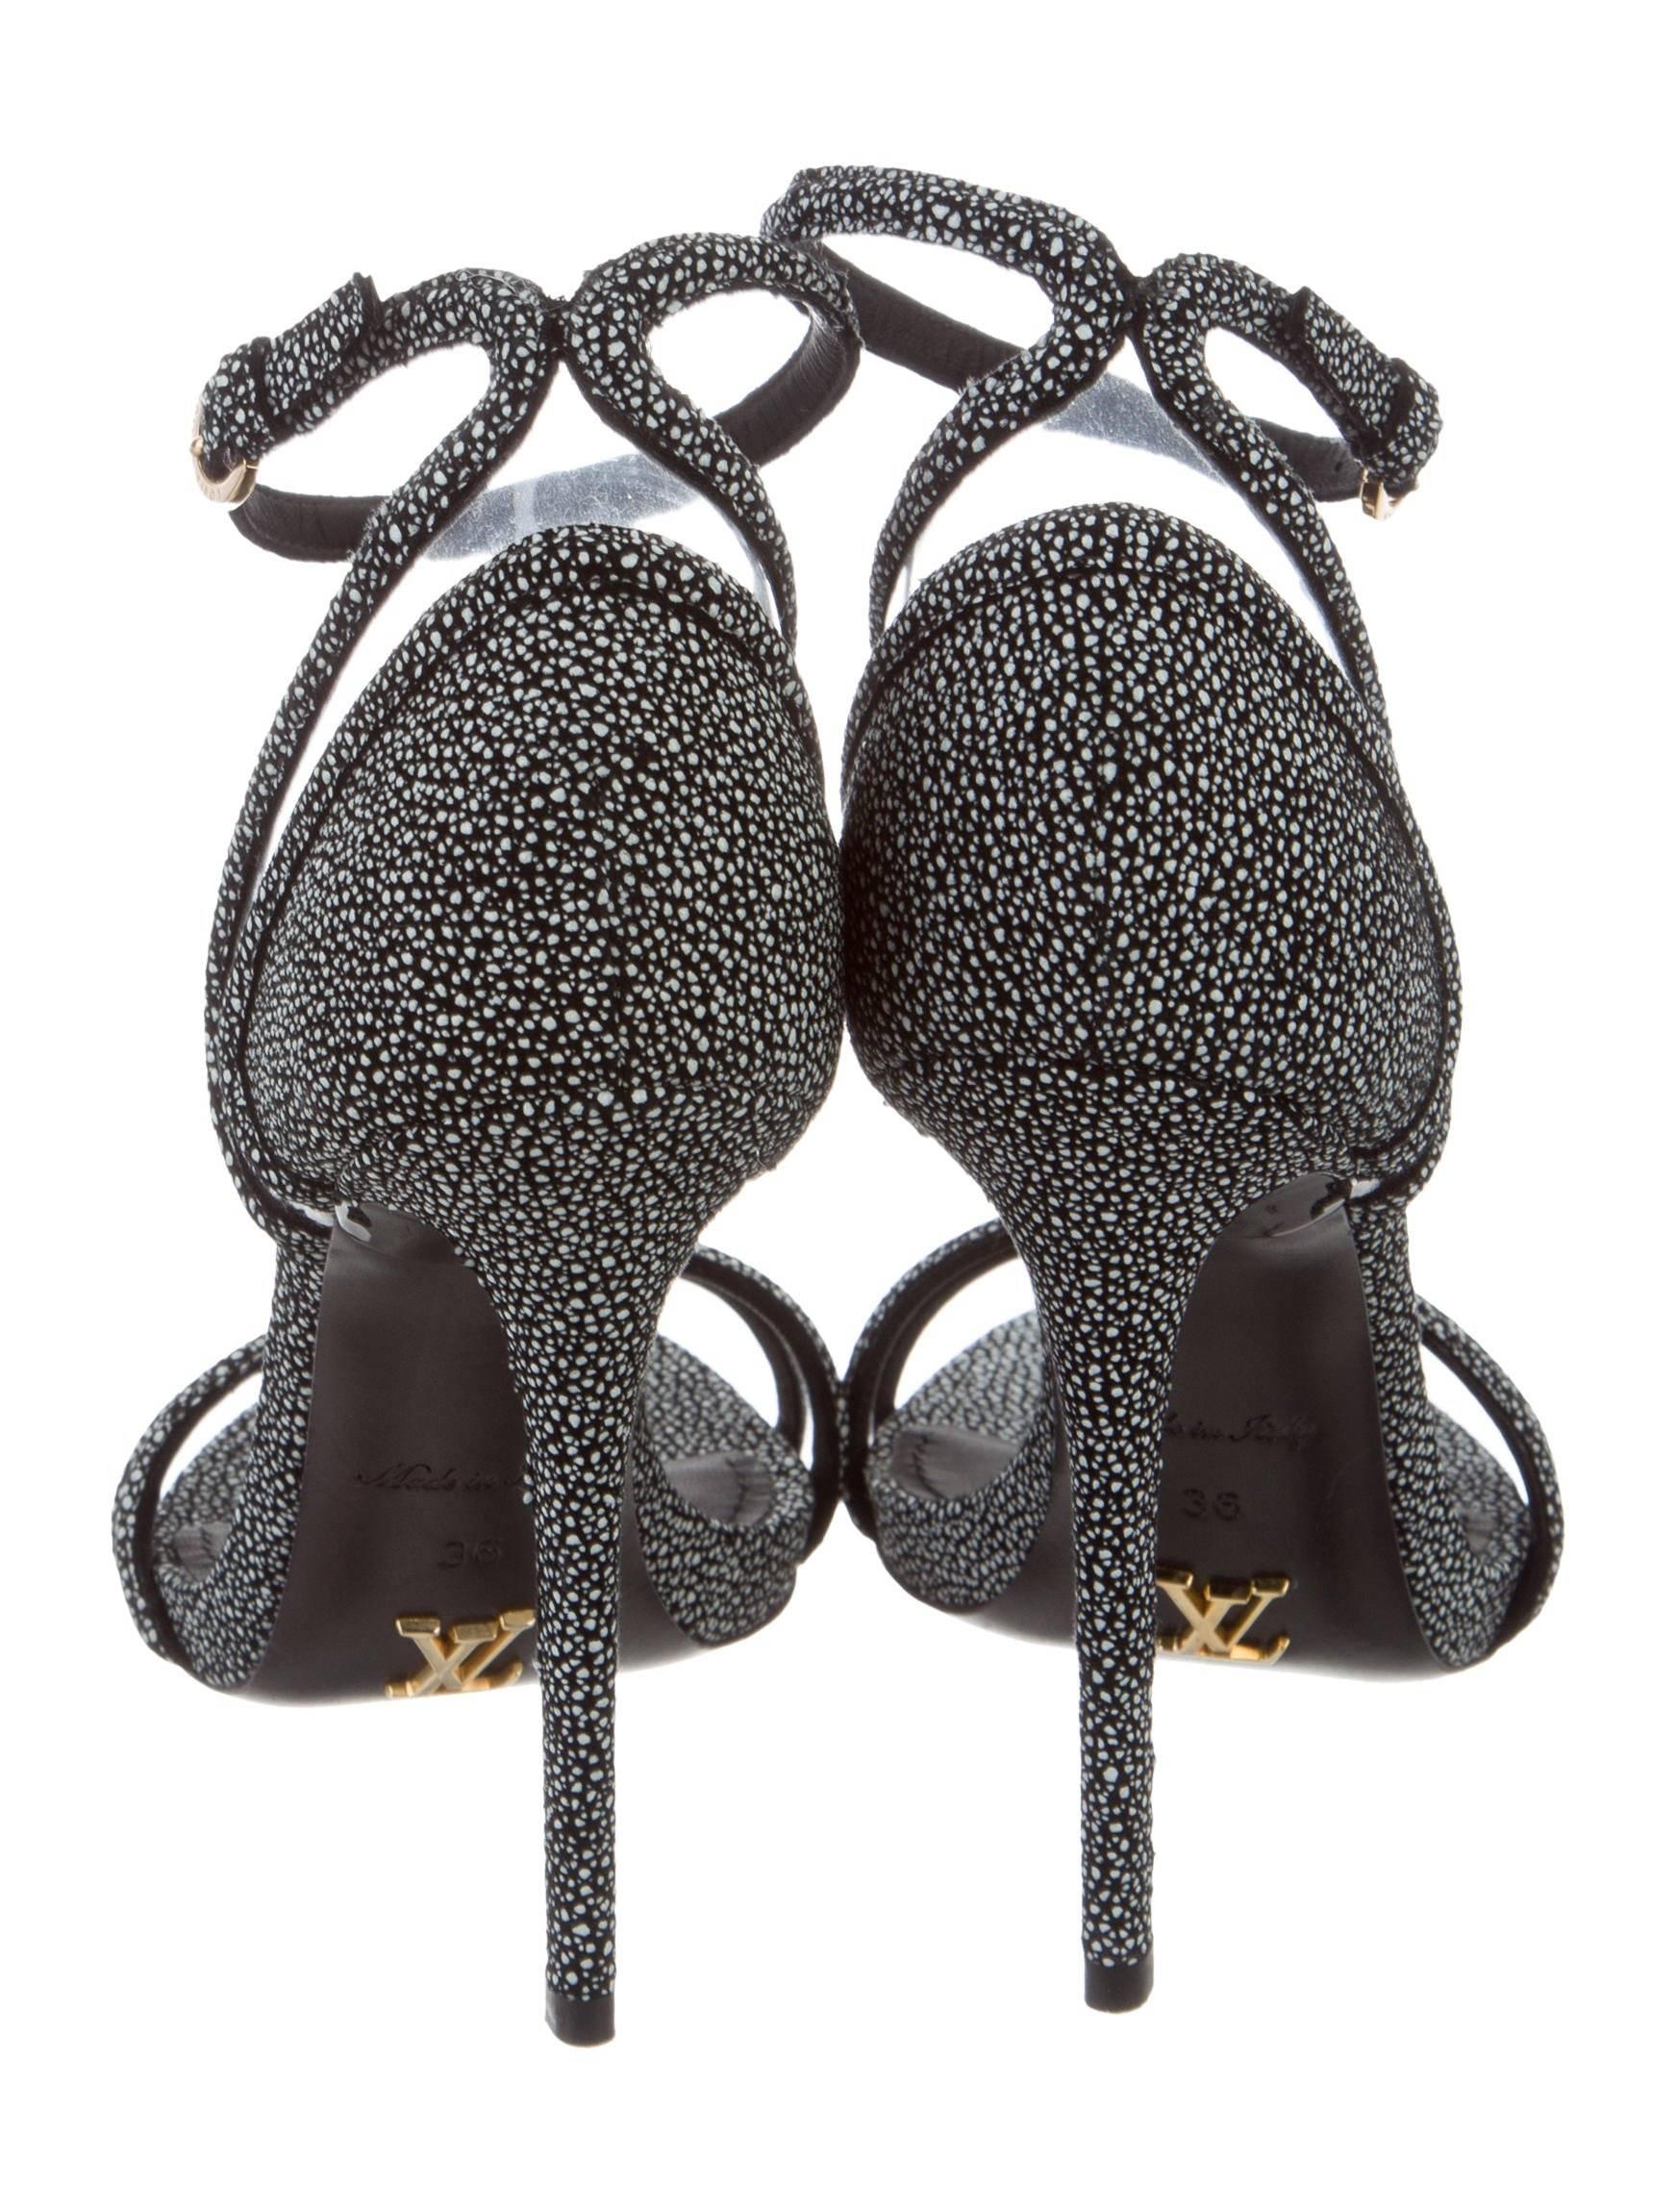 Women's or Men's Louis Vuitton New Black Speckle Suede Cut Out Evening Sandals Heels 